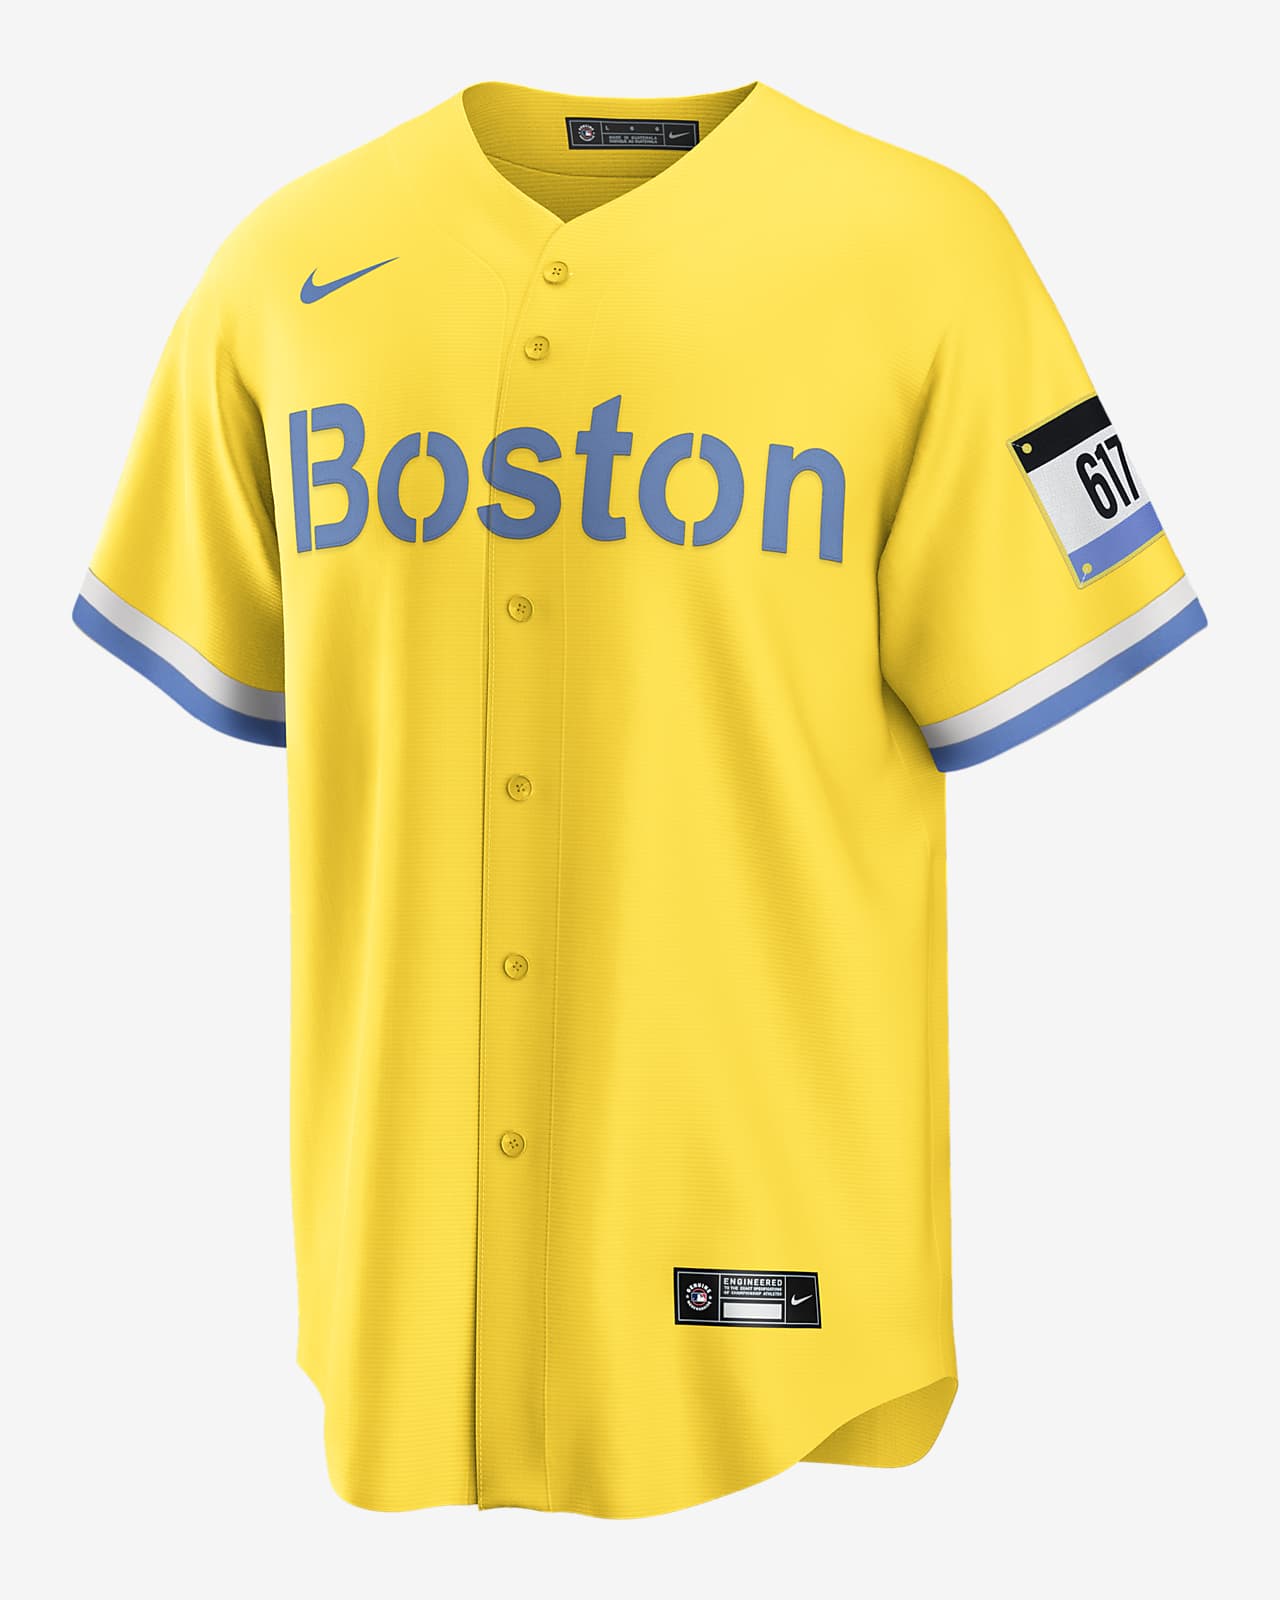 Jersey de béisbol replica para hombre MLB City Connect de los Boston Red Sox (David Ortiz)